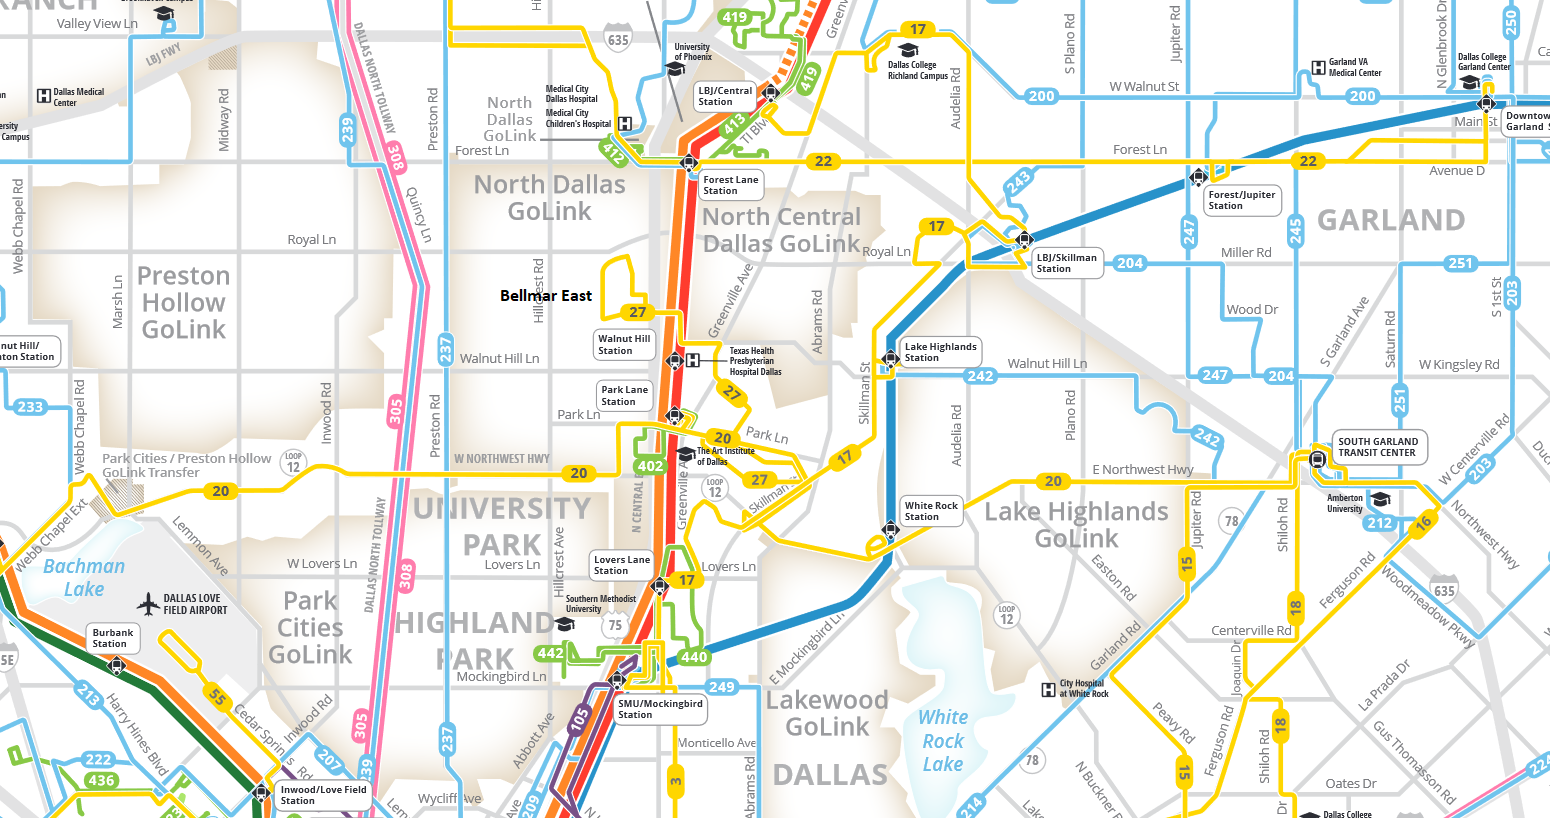 DART bus map for the North Dallas area